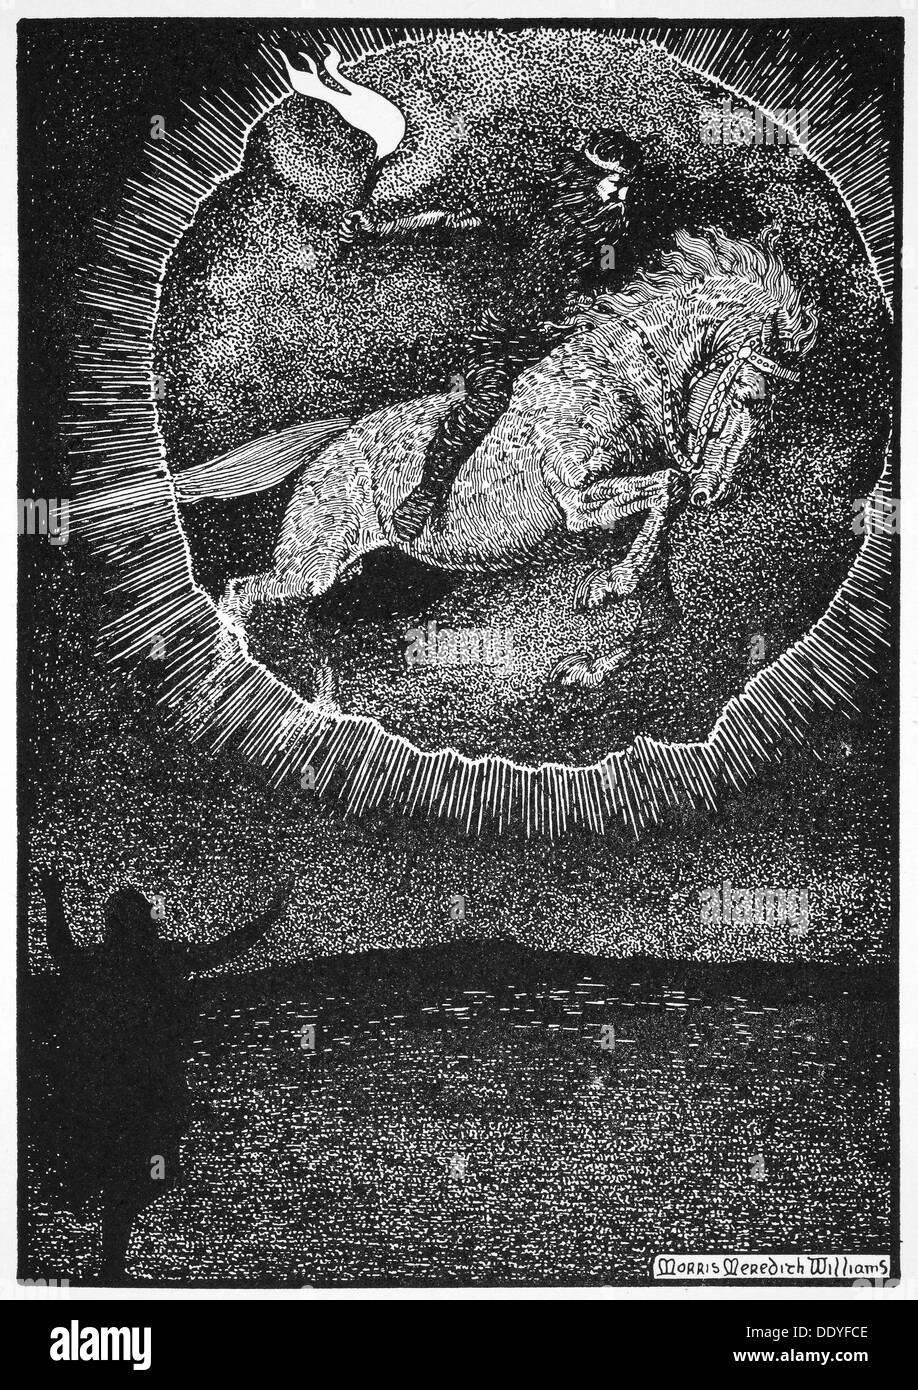 "La visione dell'uomo sul cavallo grigio', 1913. Artista: Morris Meredith Williams Foto Stock